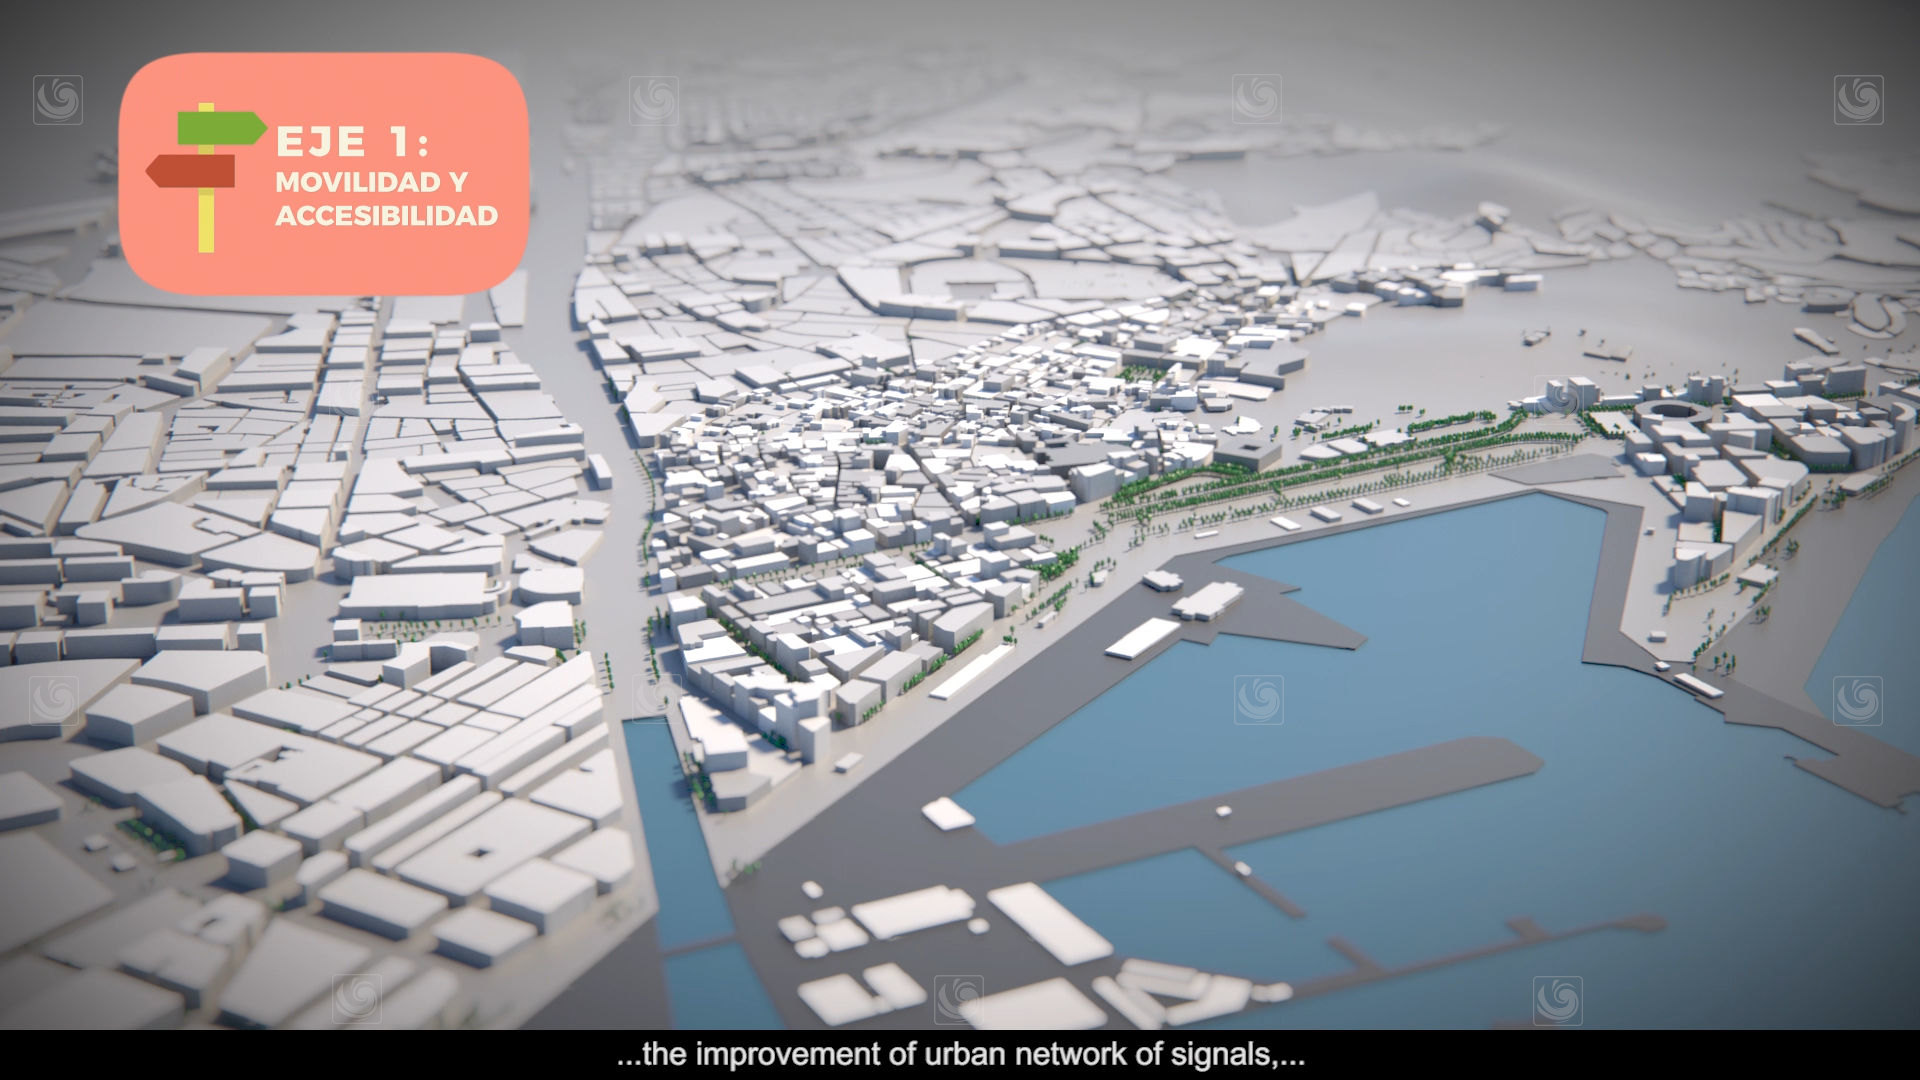 Fotograma de animación 3D mostrando la ciudad de Málaga